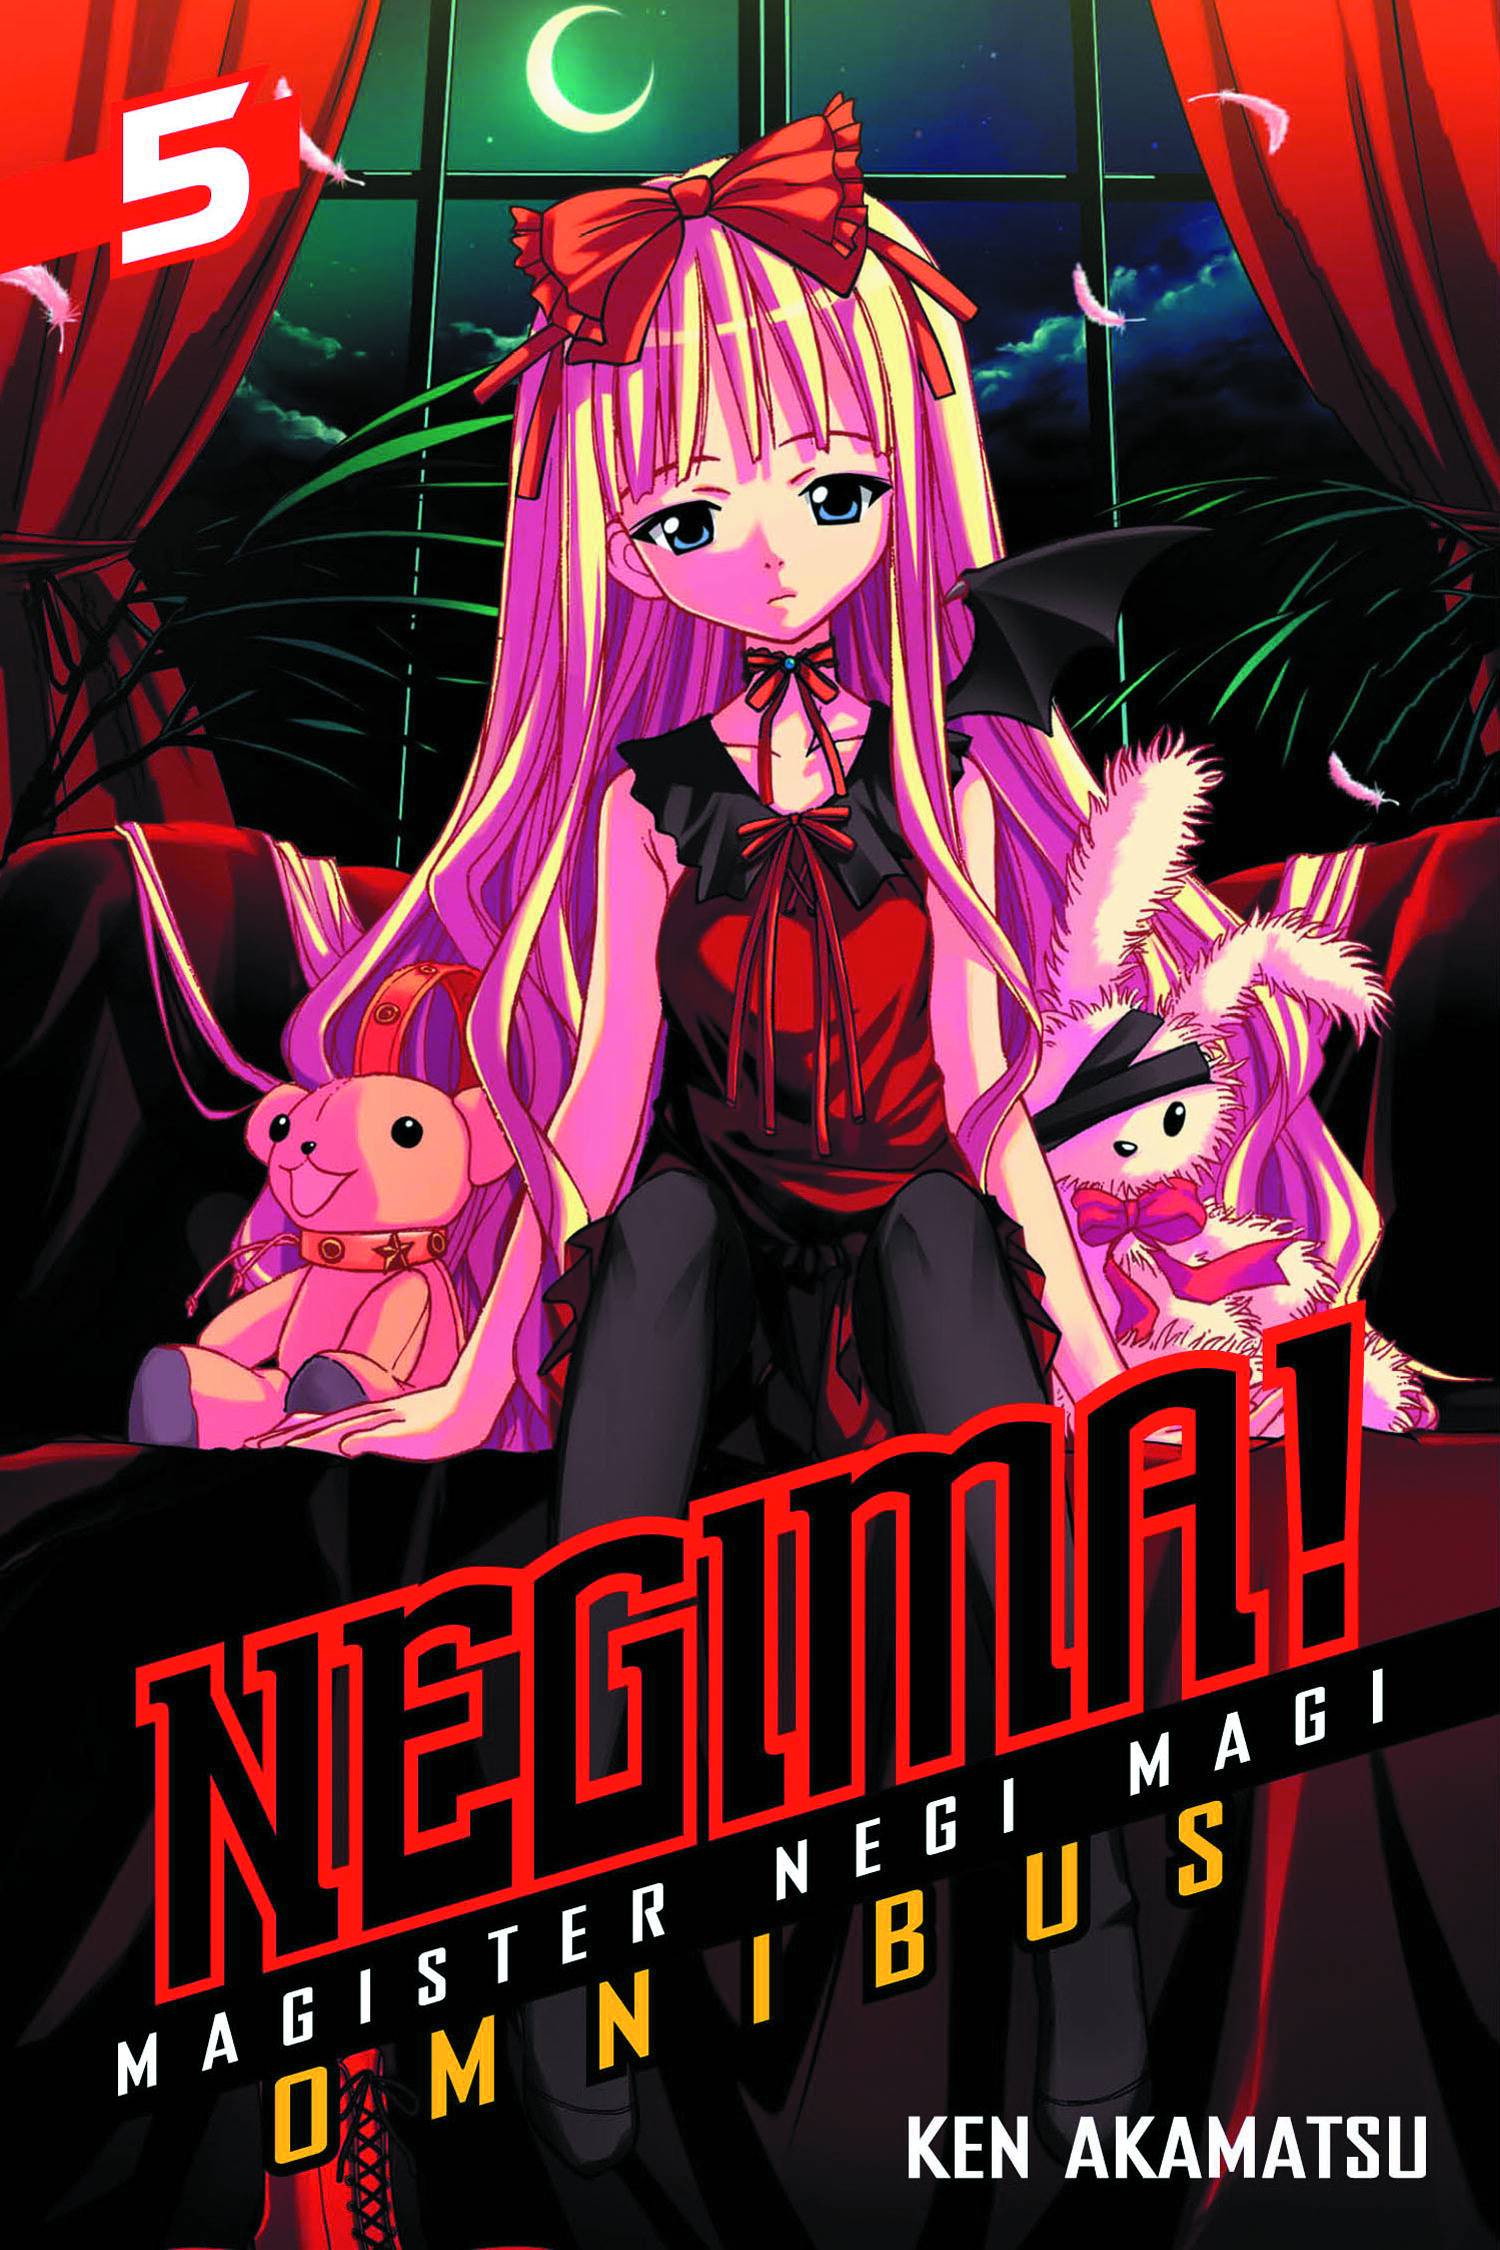 Negima Omnibus Manga Volume 5